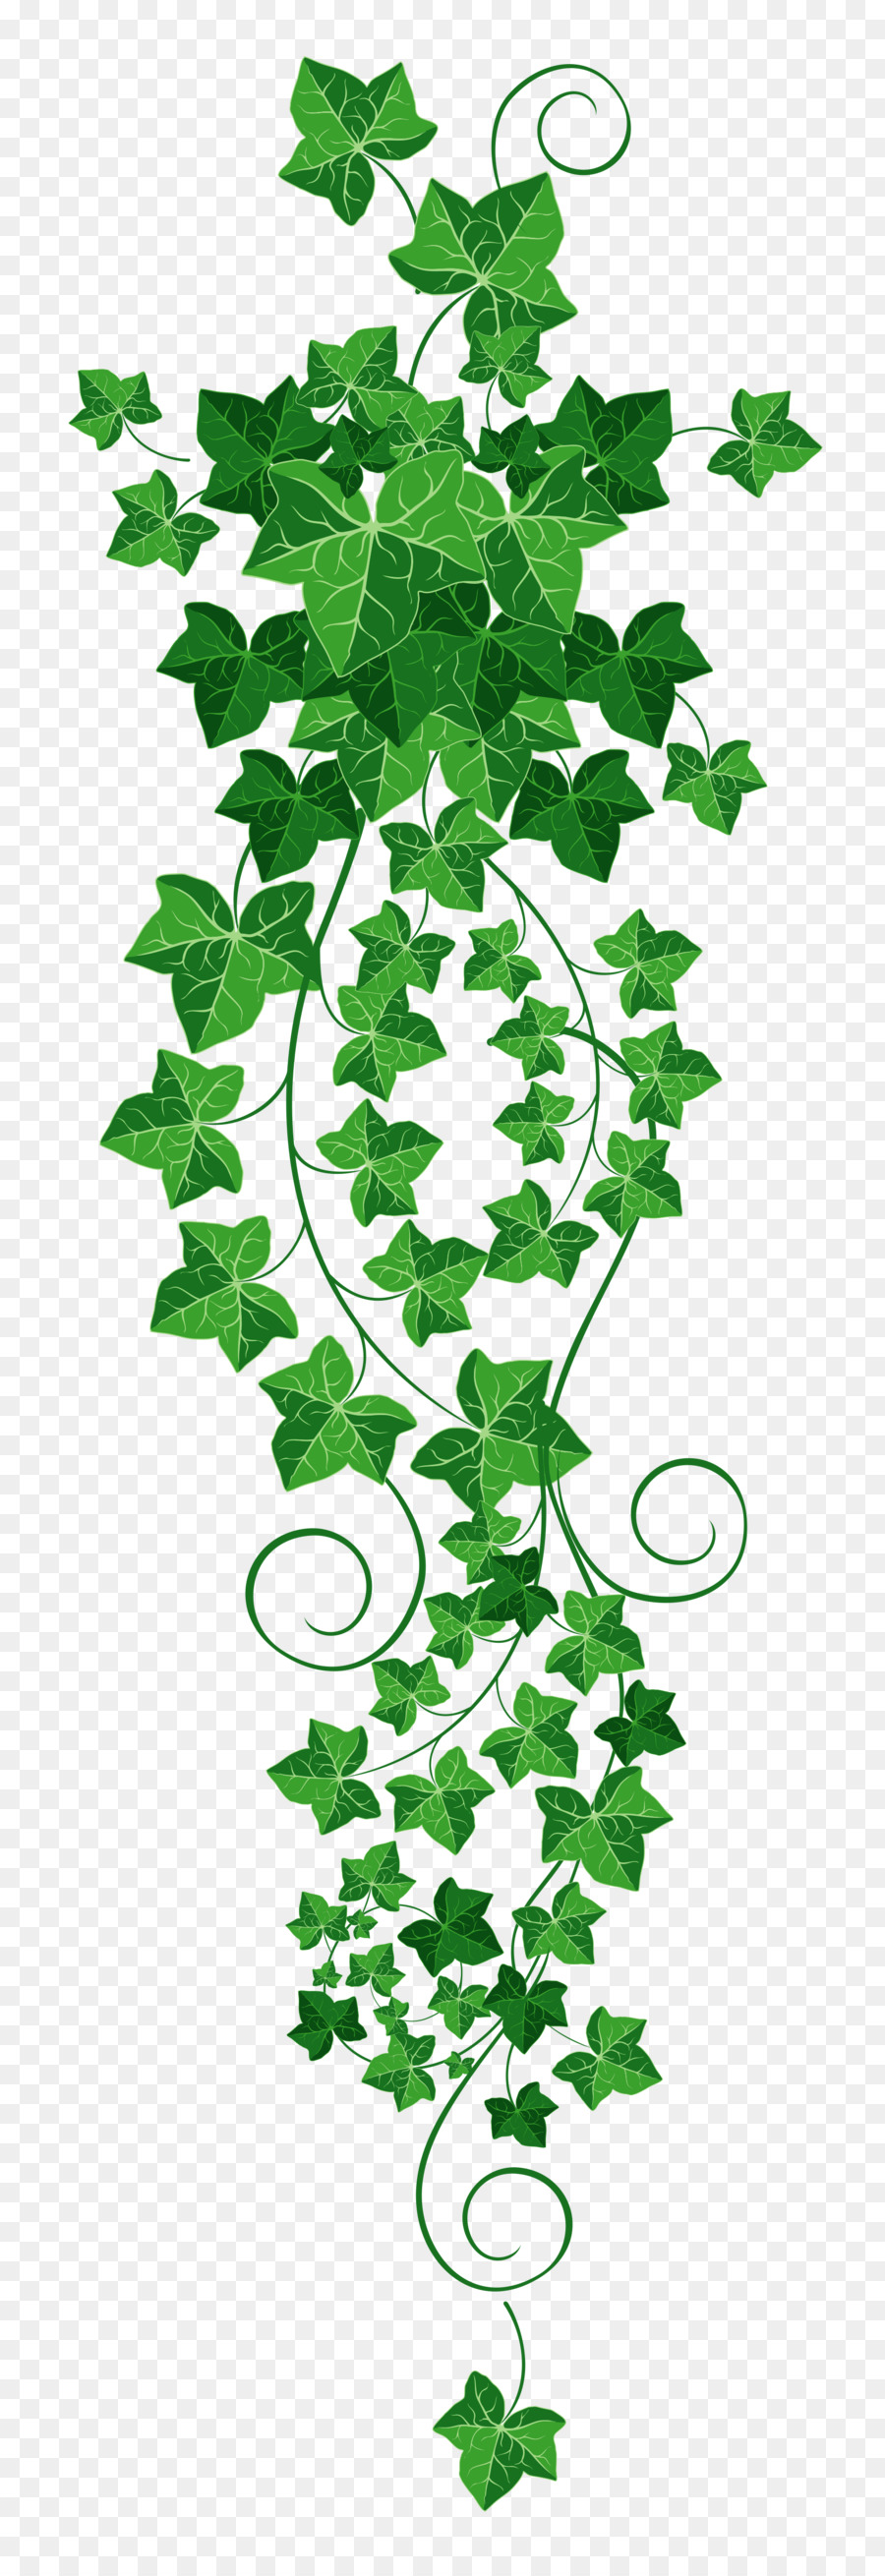 aka ivy leaf clip art